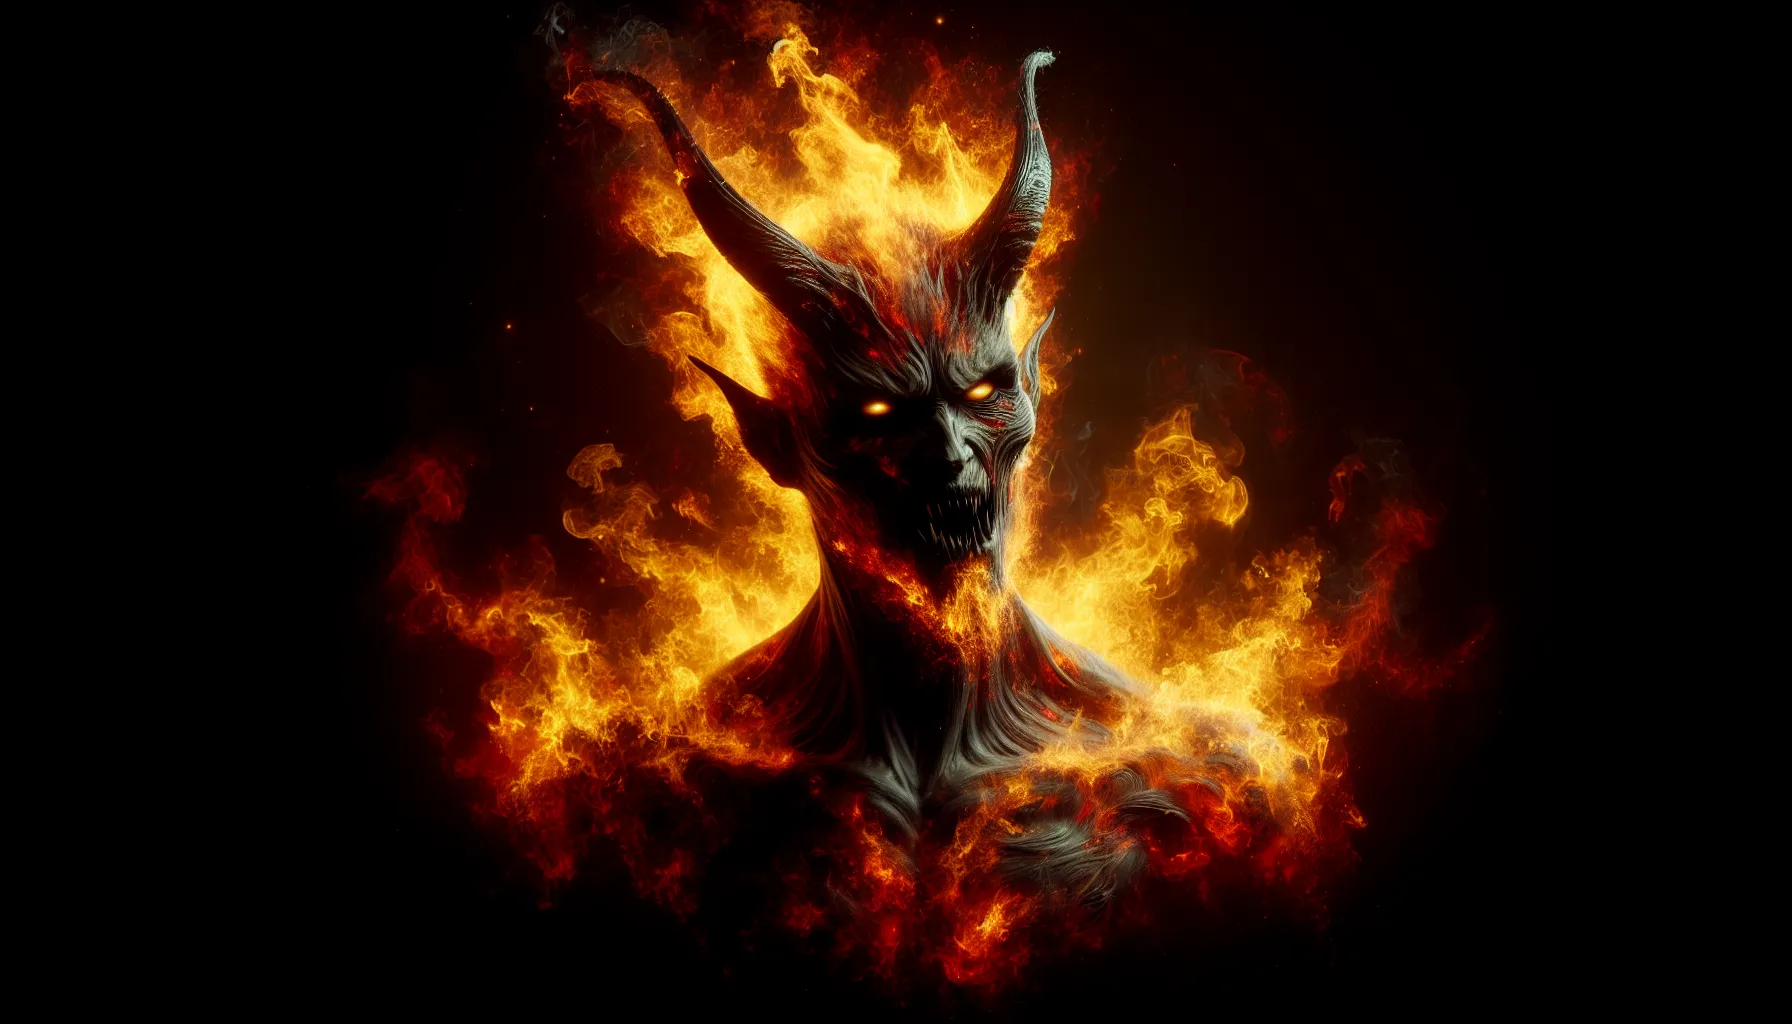 Representación visual de un demonio en llamas